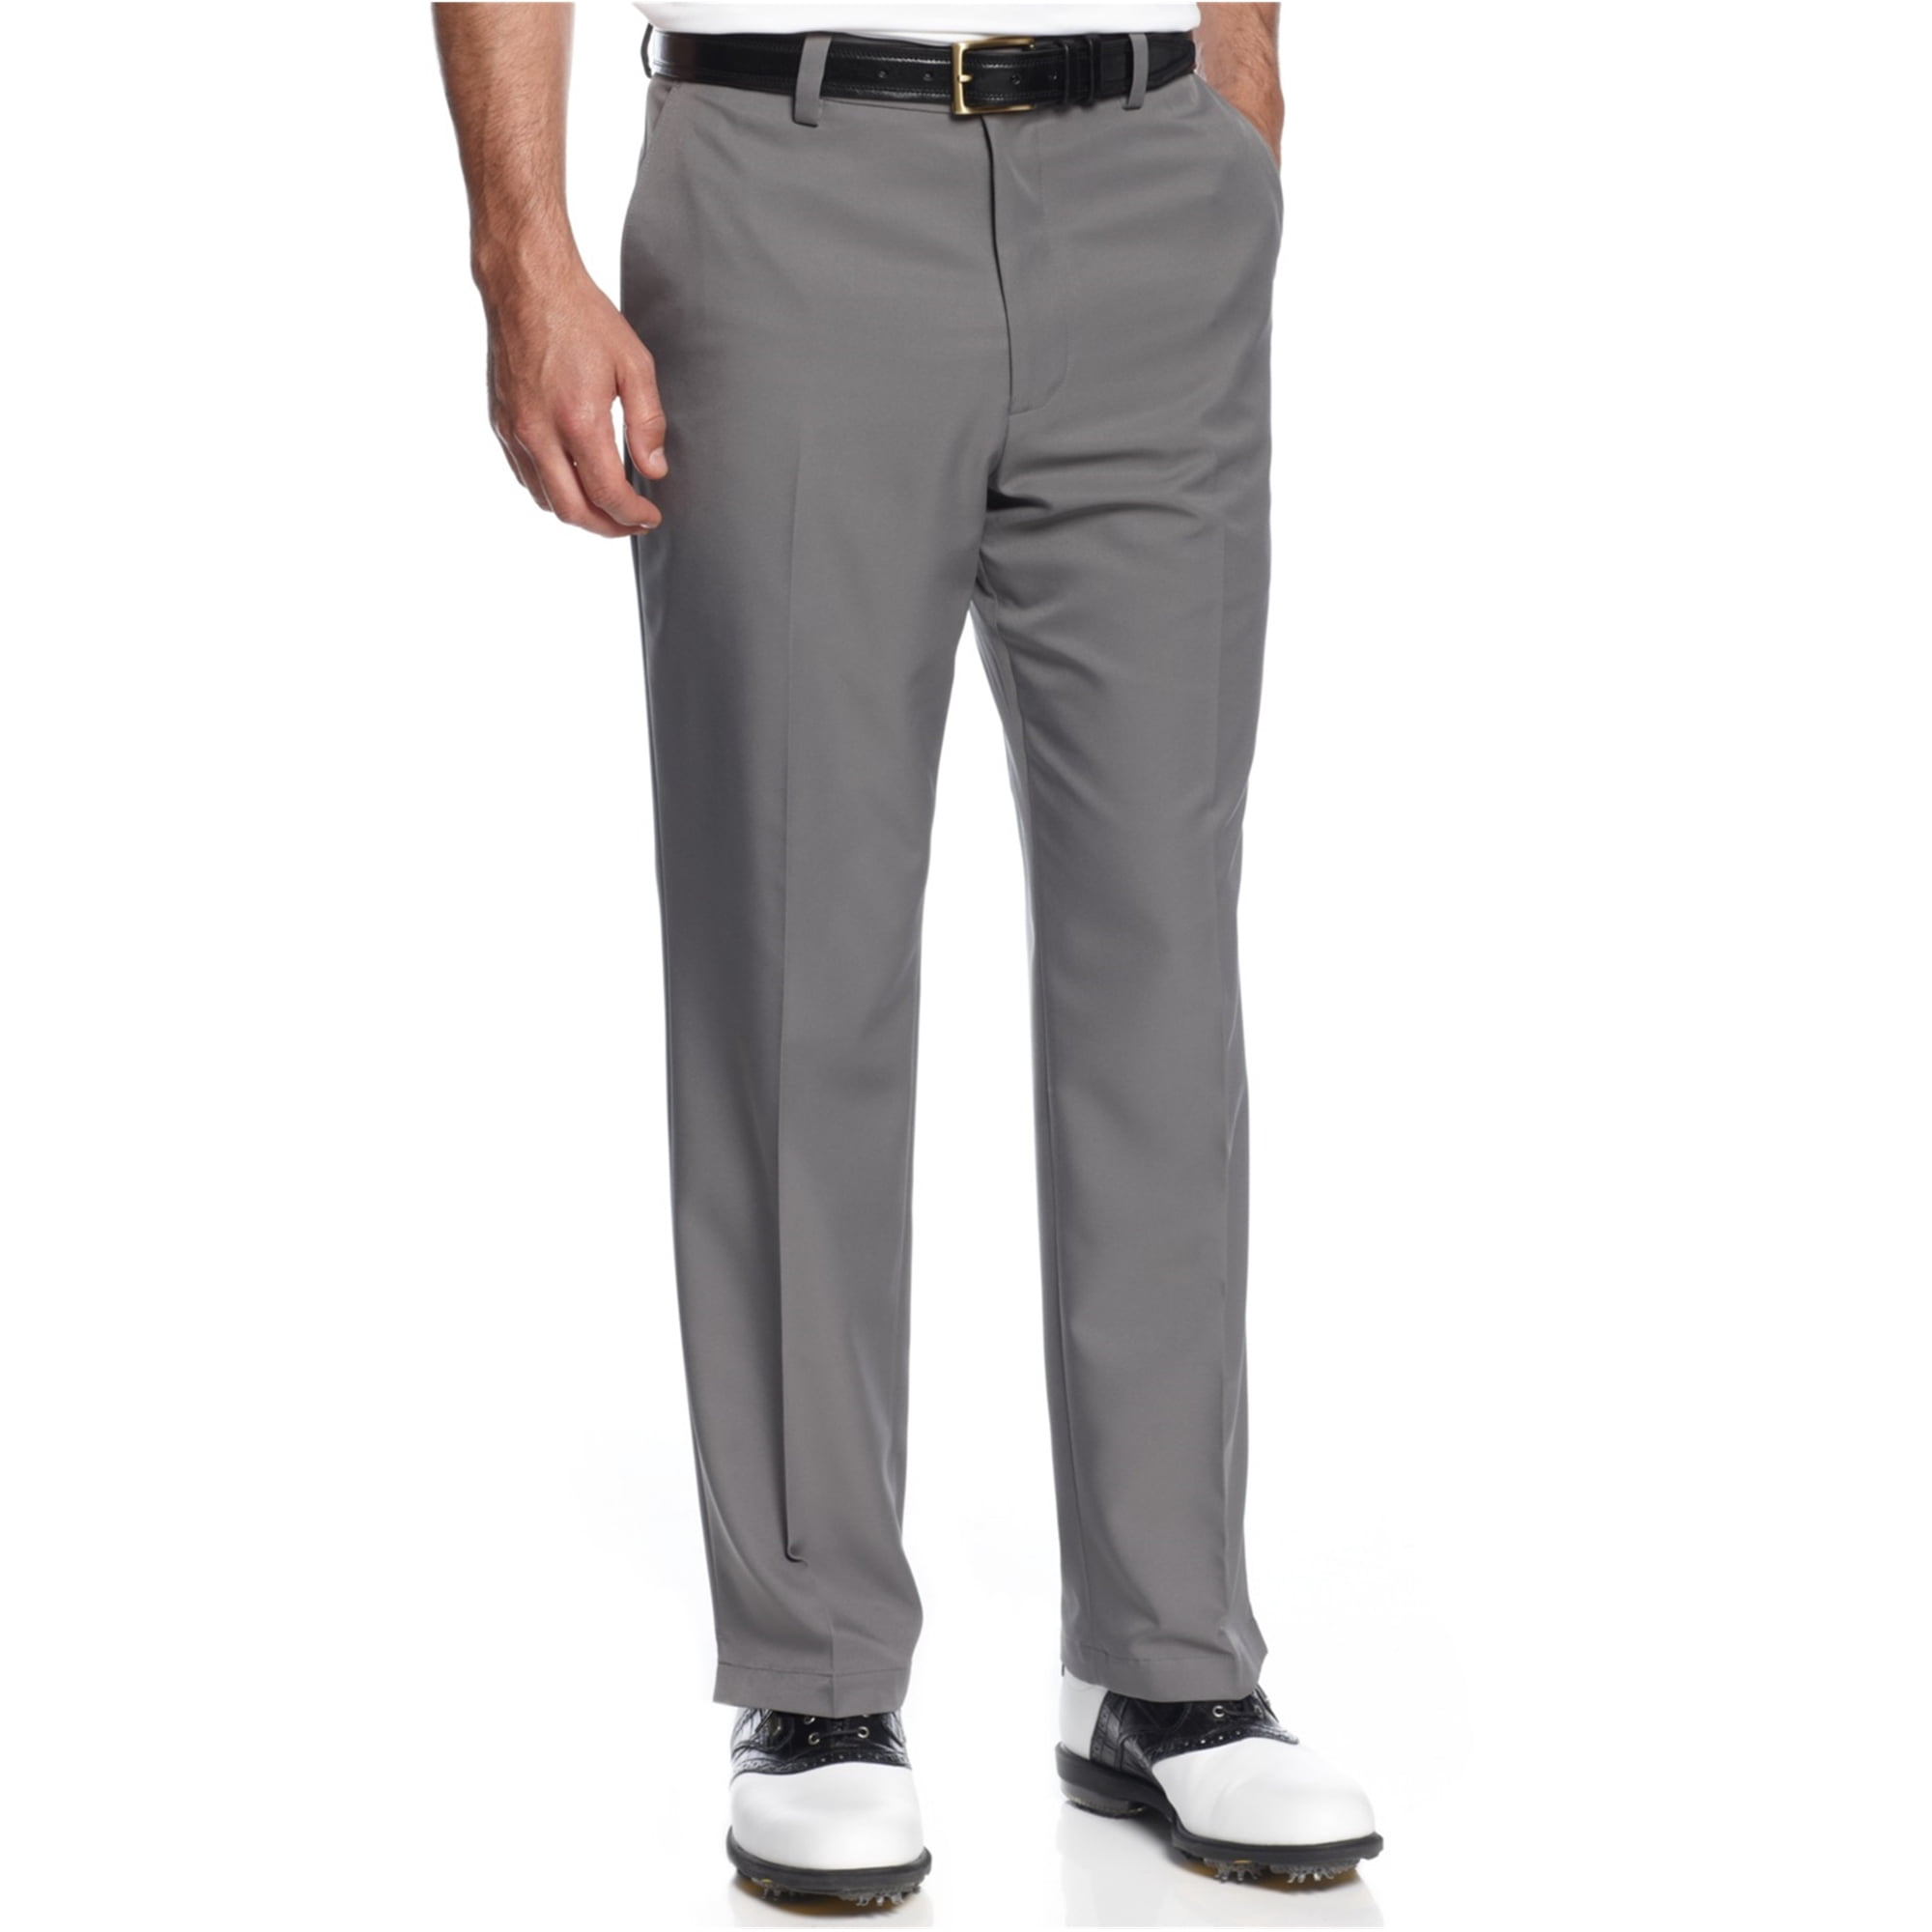 Greg Norman Mens Golf Casual Jogger Pants - Walmart.com - Walmart.com